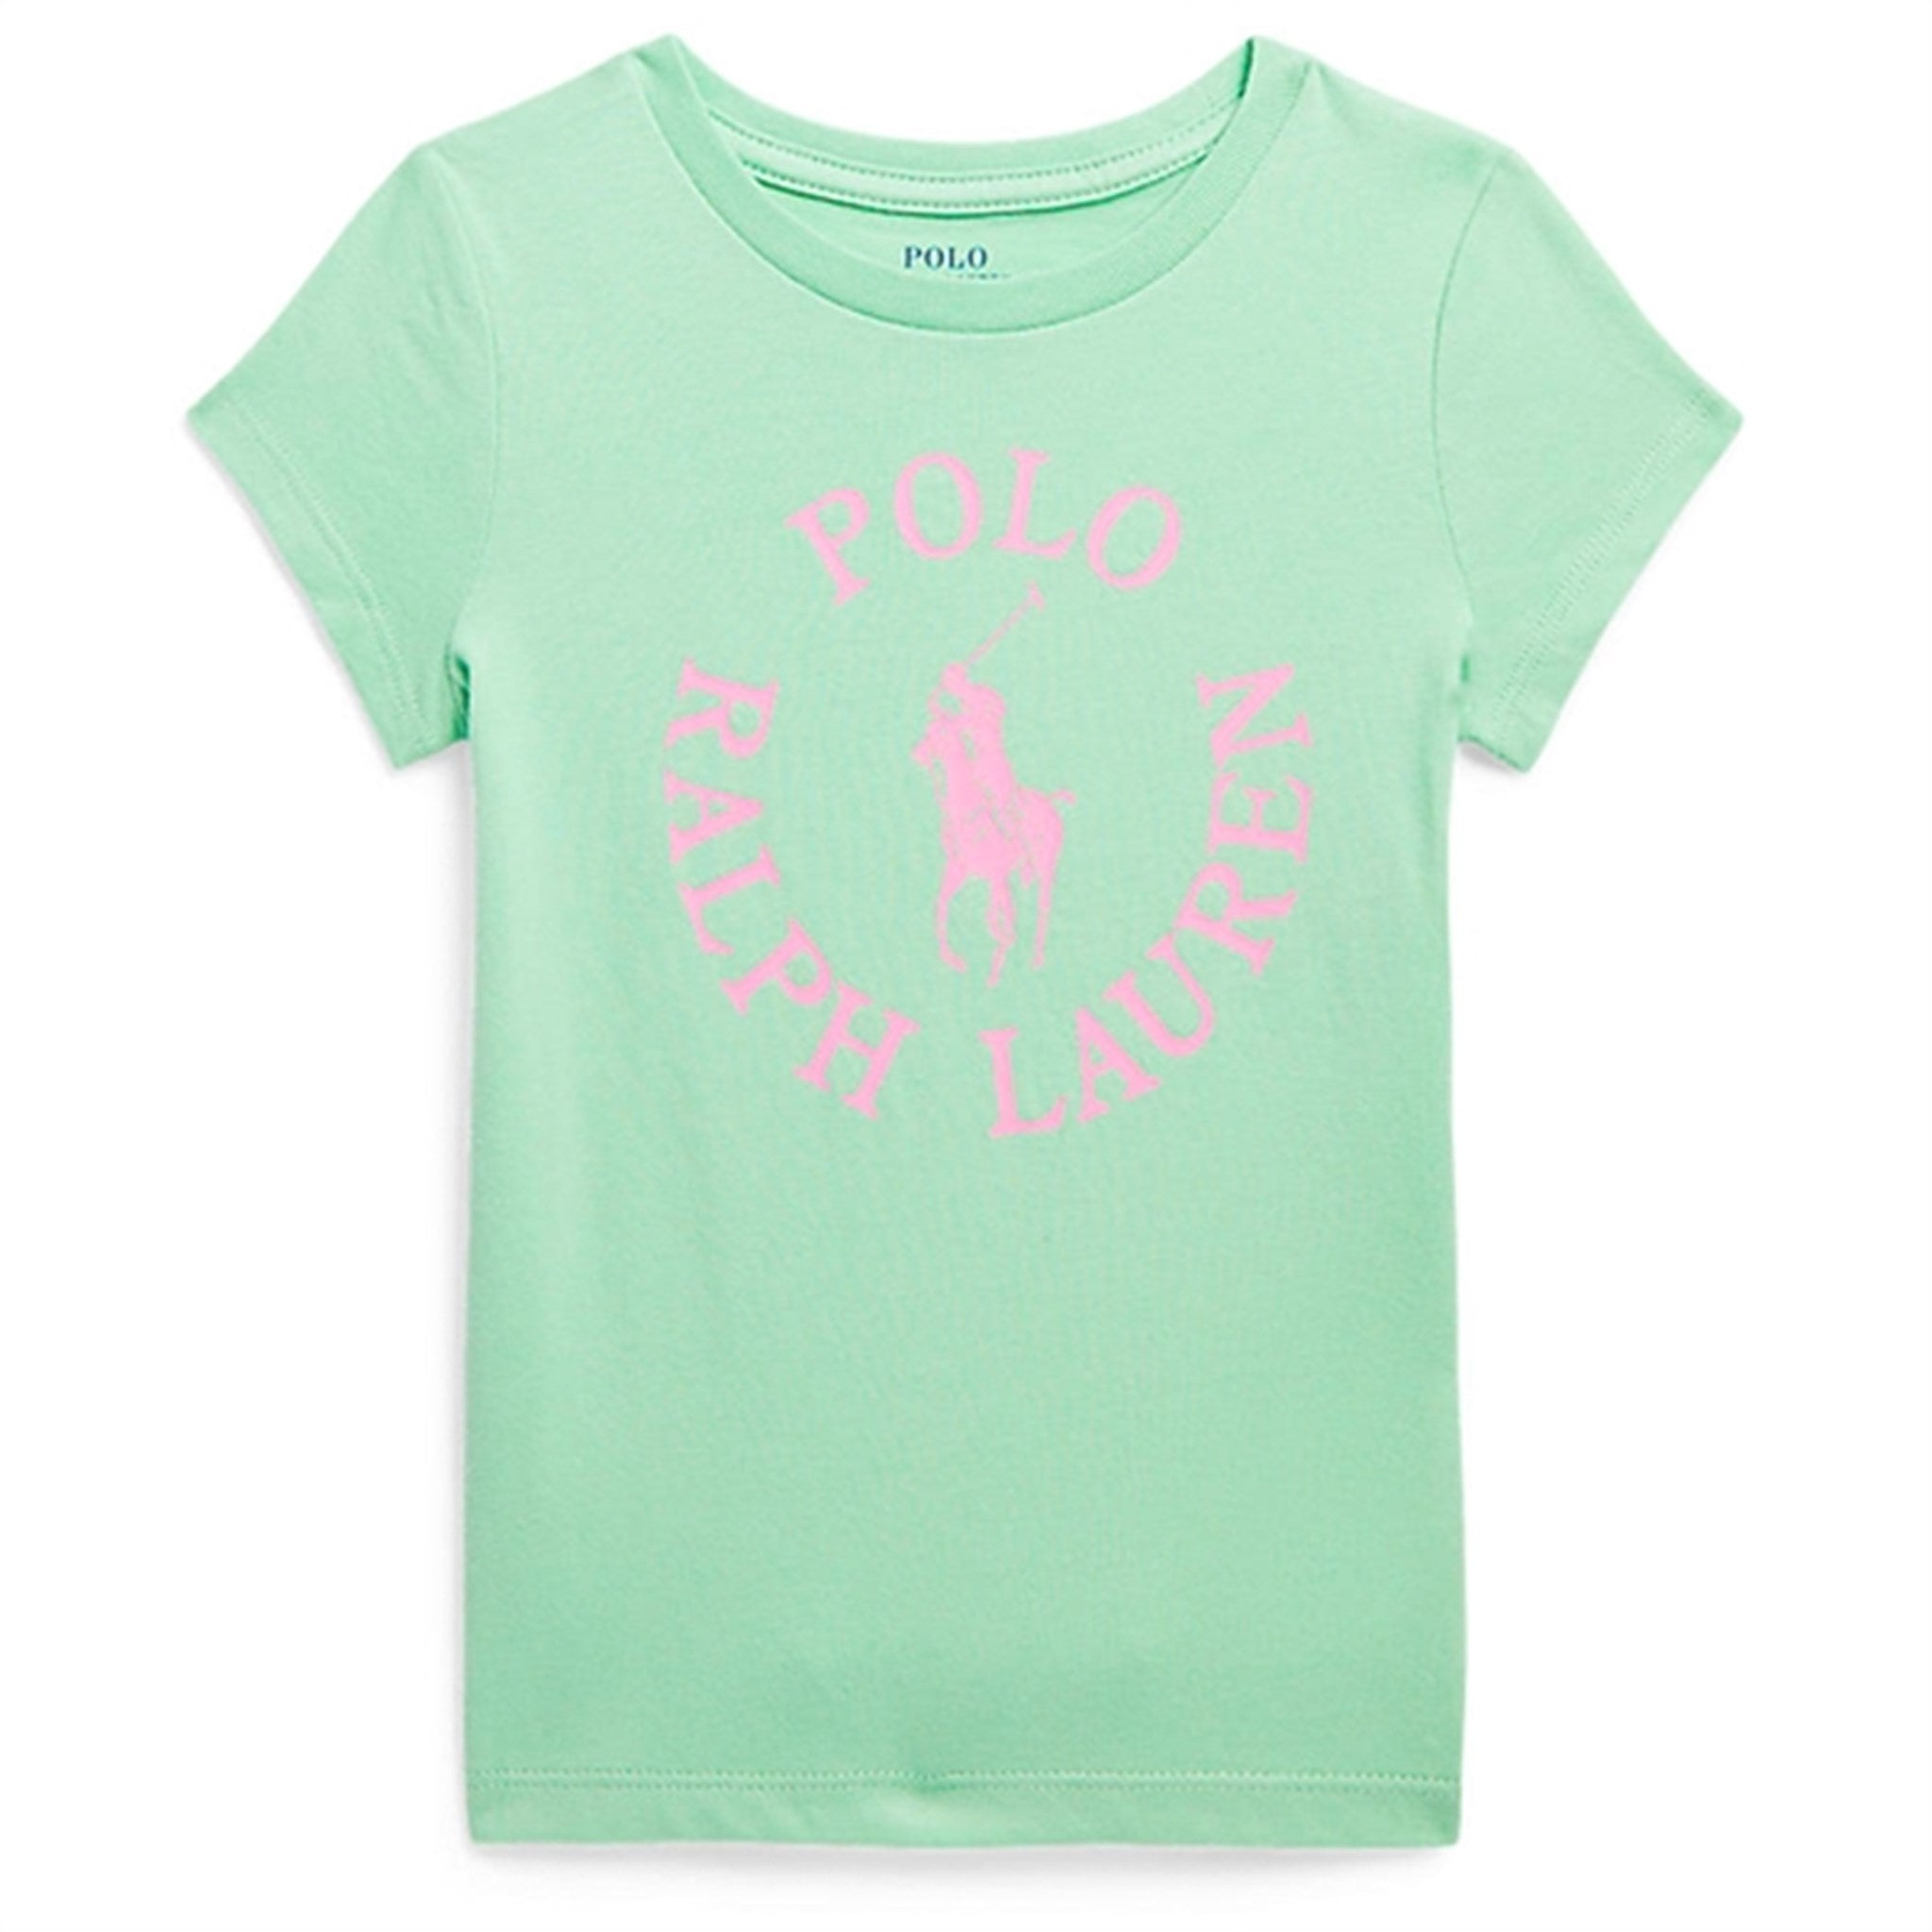 Polo Ralph Lauren Green Graphic T-Shirt